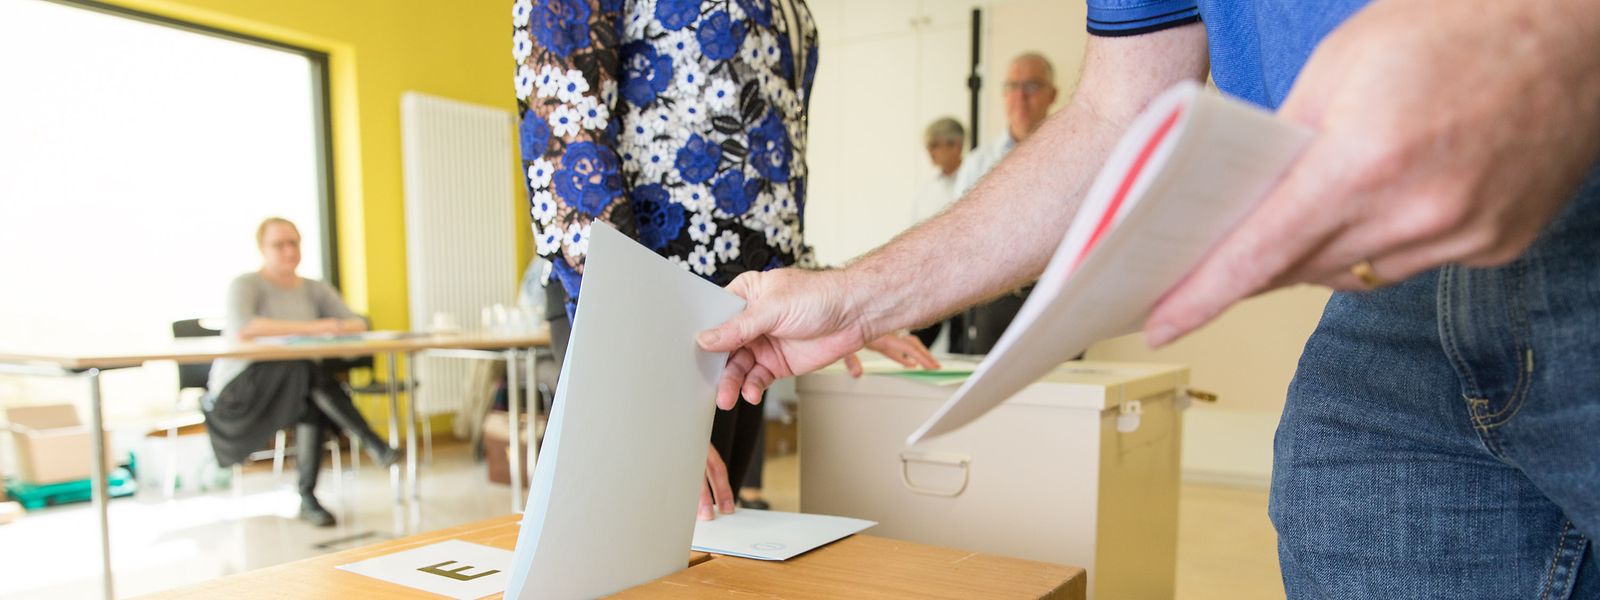 Até ao final da semana passada eram apenas 29.657 mil os não-luxemburgueses inscritos para votar.